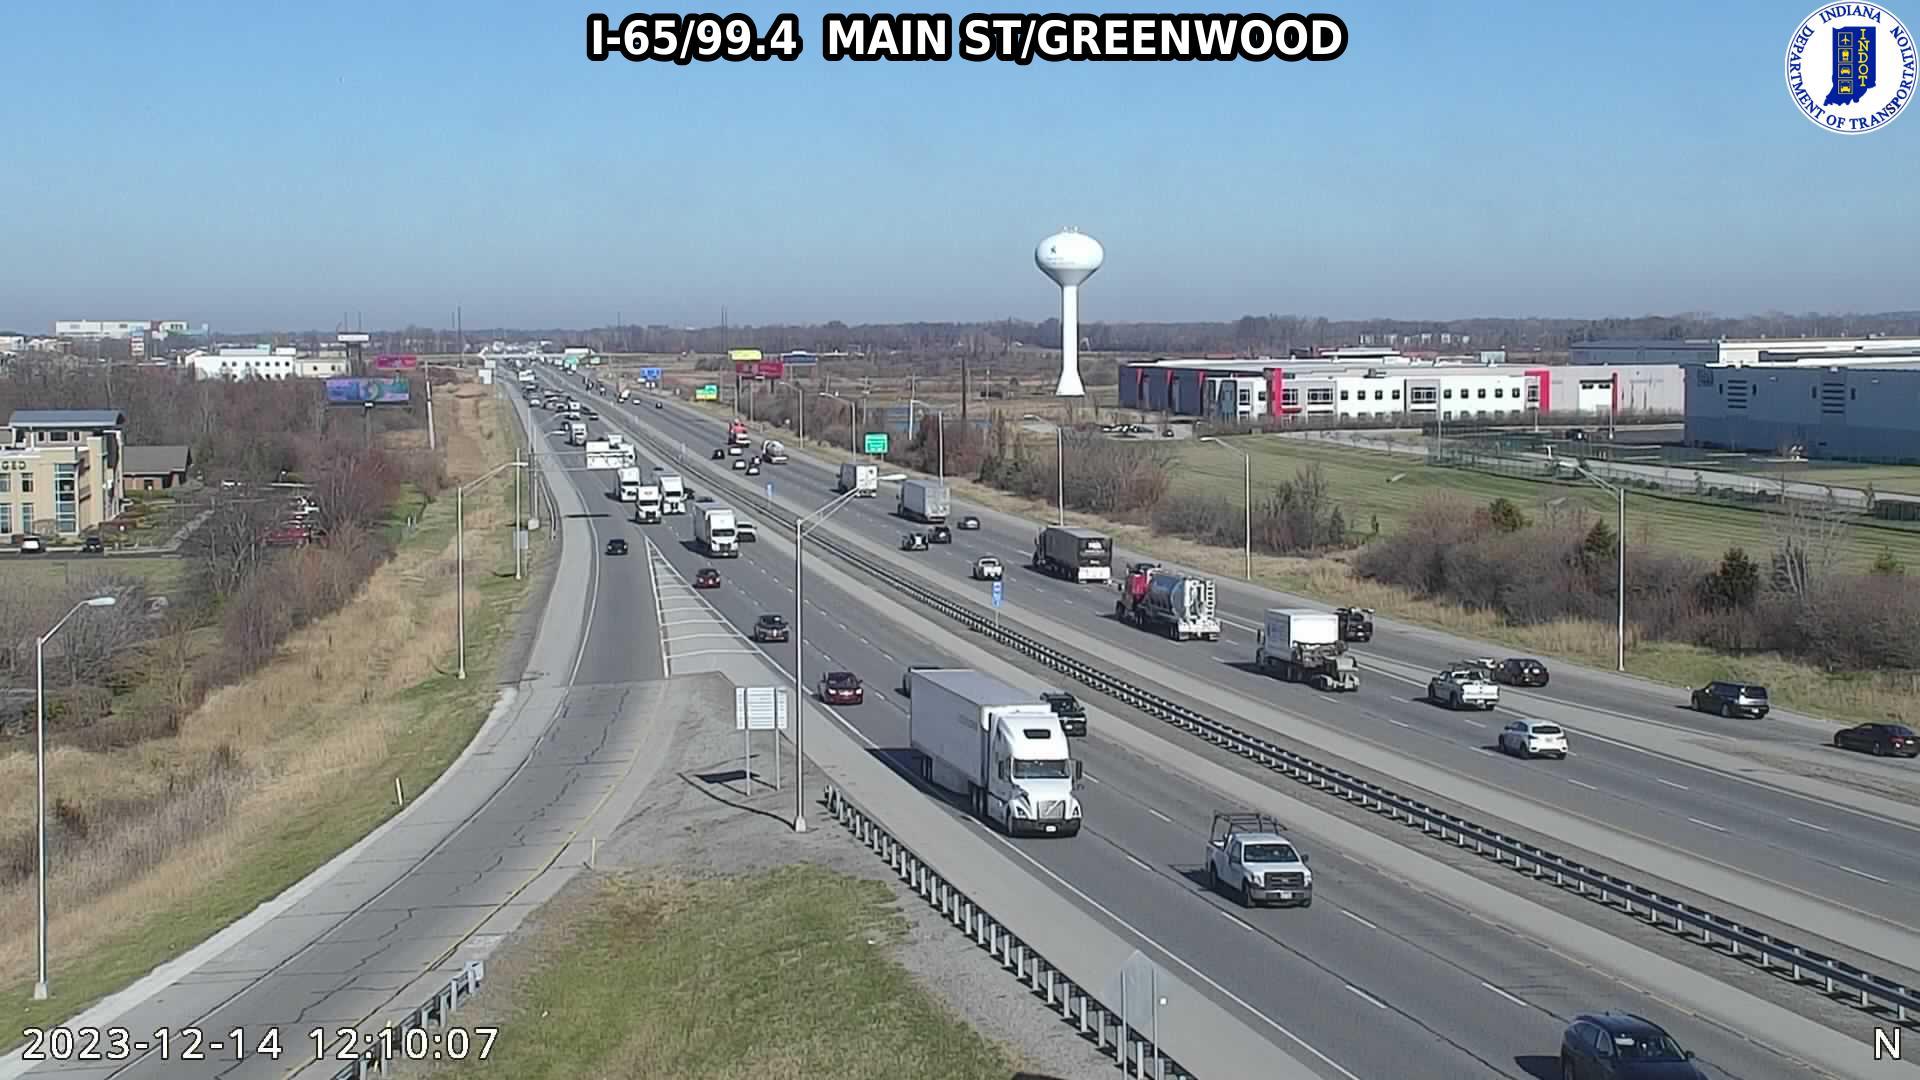 Traffic Cam Greenwood: I-65: I-65/99.4 MAIN ST - I-65/99.4 MAIN ST